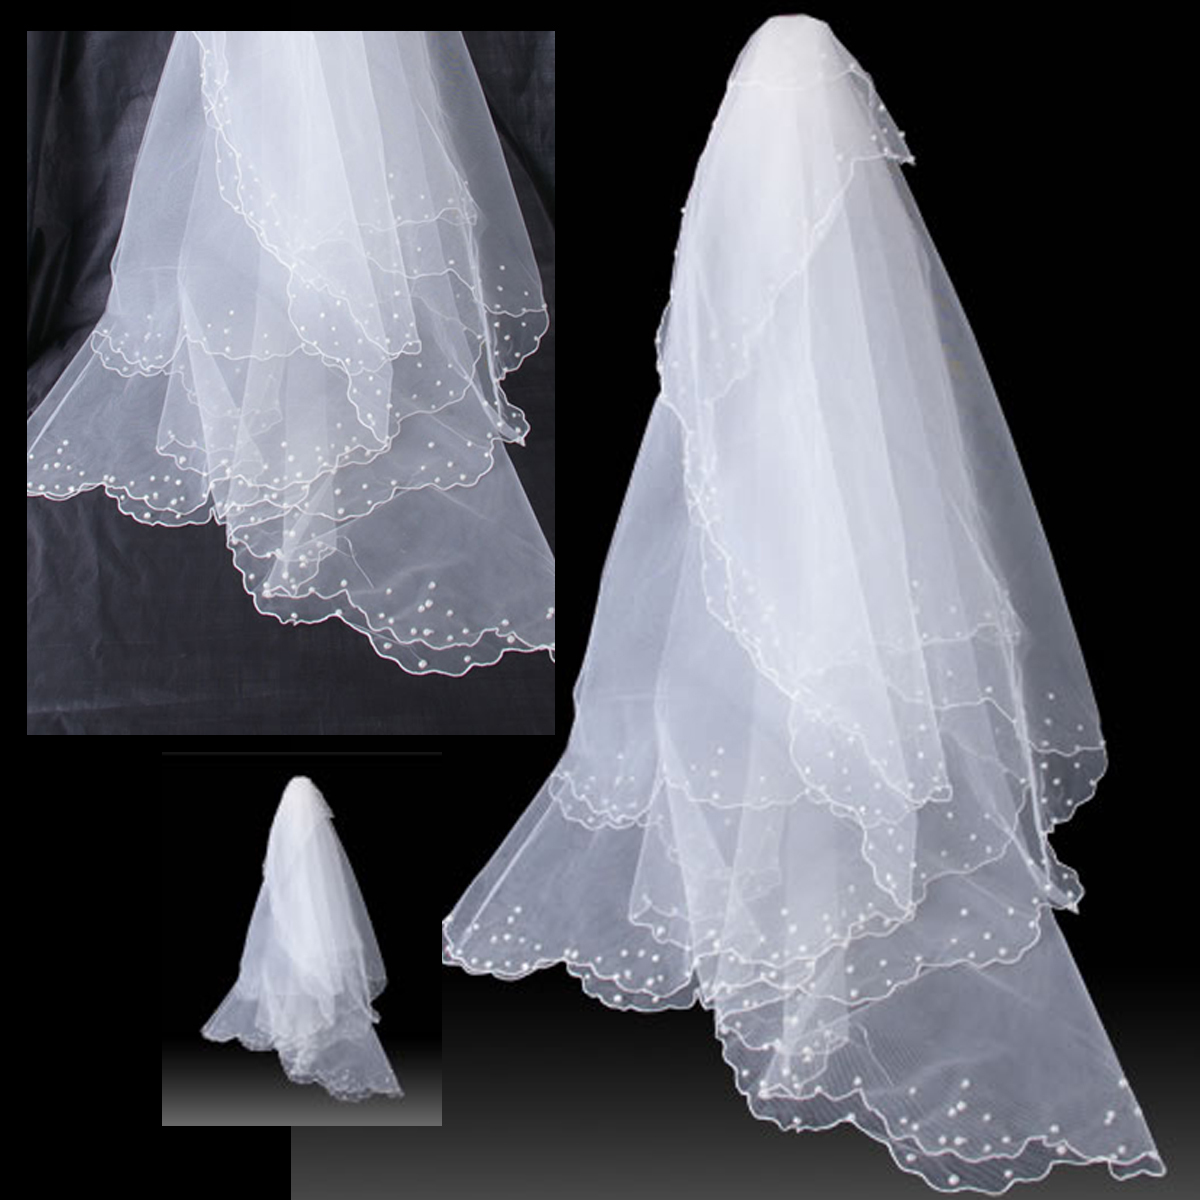 Jade bride 3 meters crescendos bead veil wedding dress veil bridal veil 5010 meters